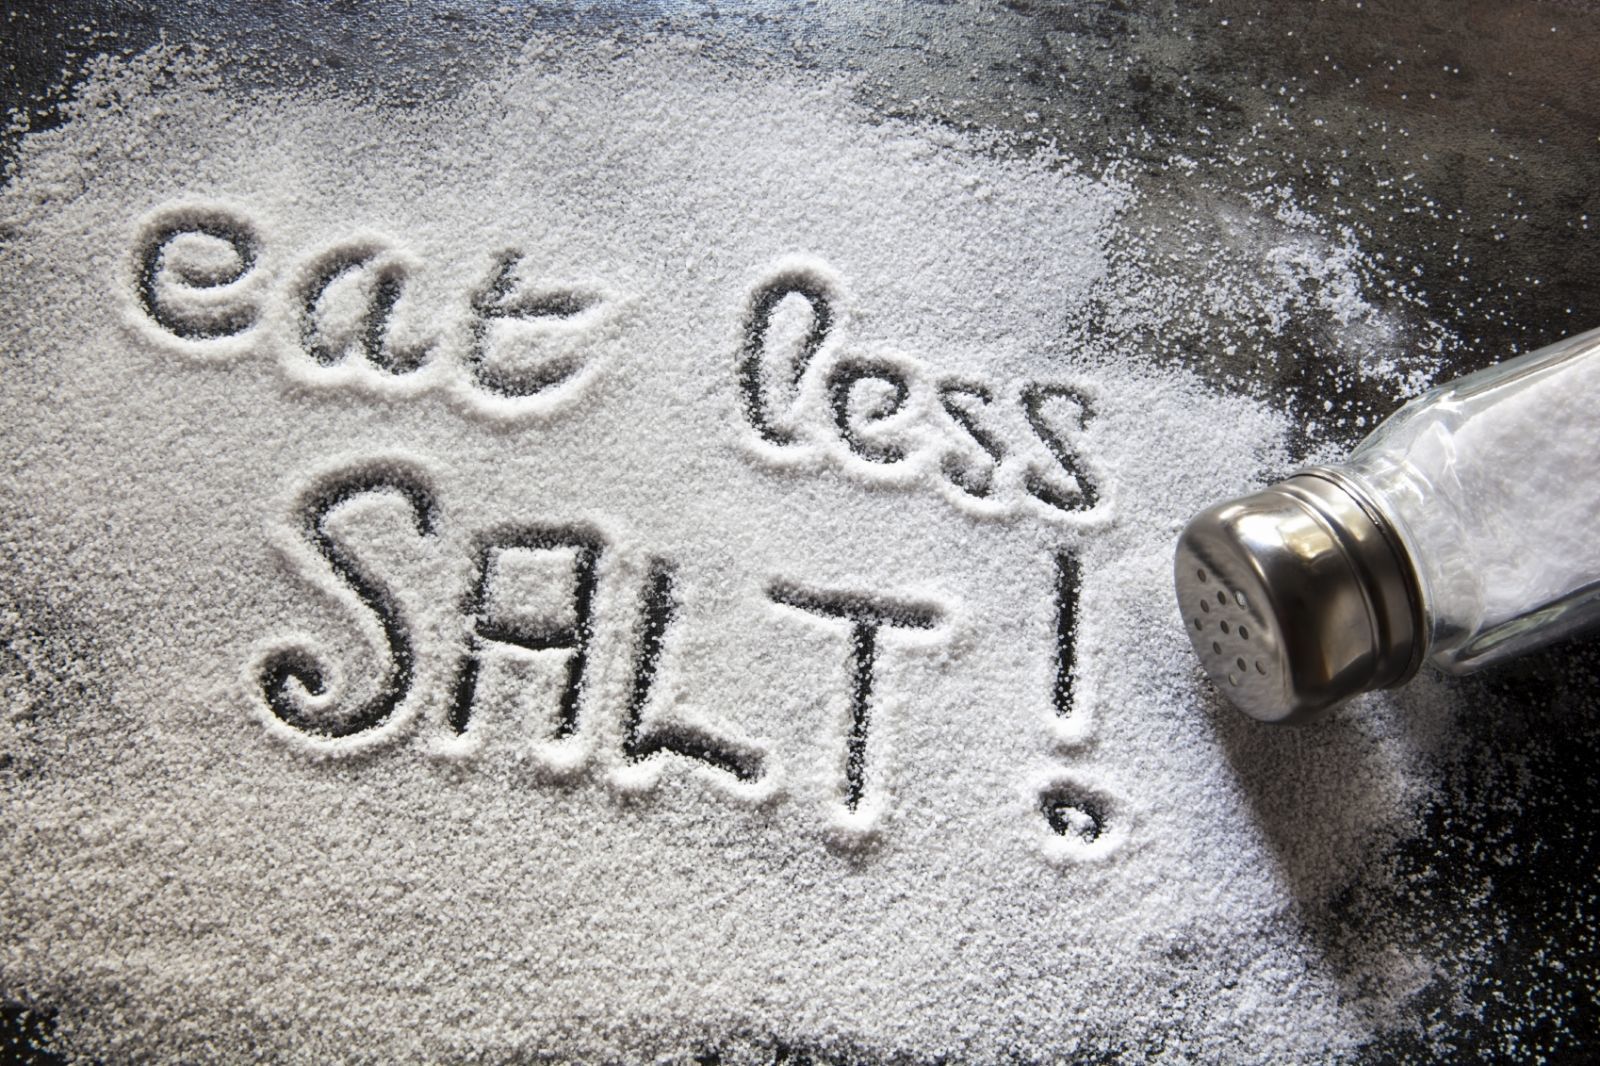 2. Kurangi konsumsi garam